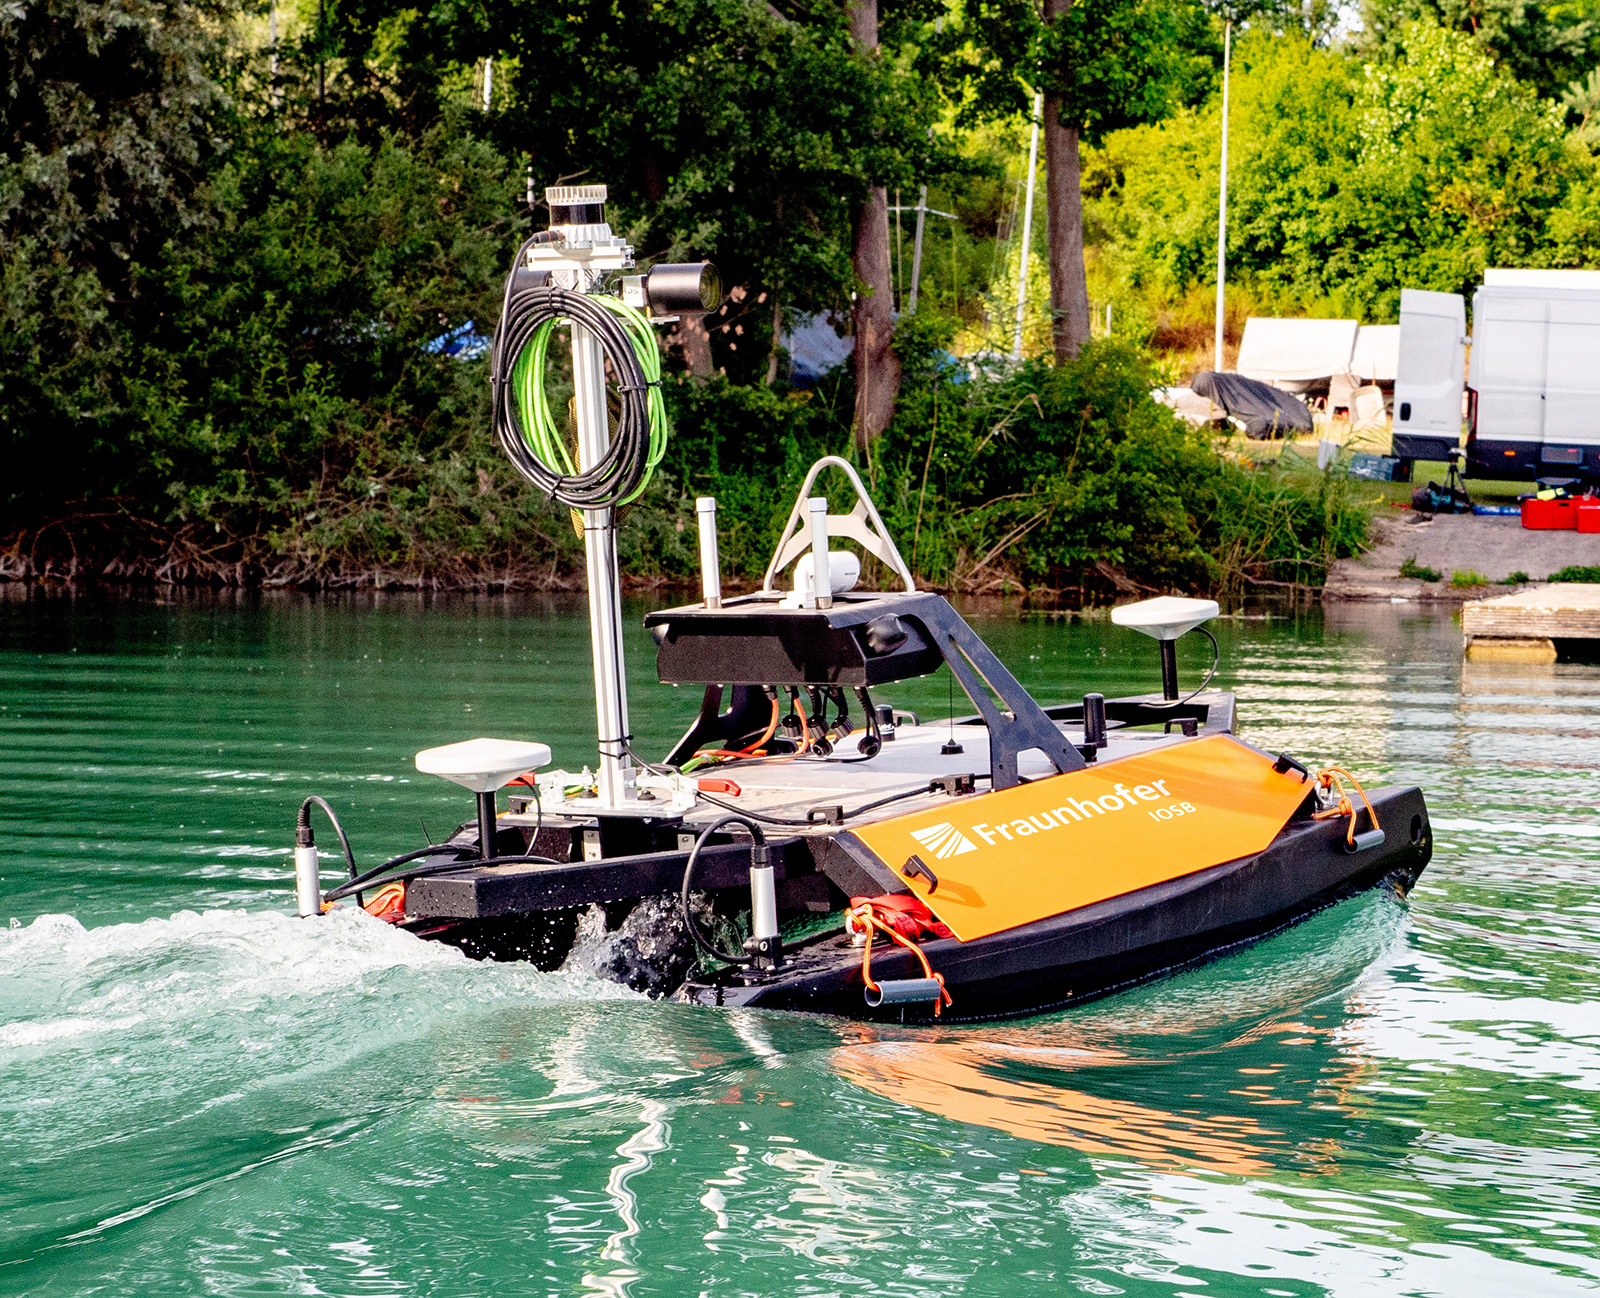 Das im Projekt TAPS mit Autonomie- fähigkeiten und Sensoren zur Über- und Unterwasserkartierung ausgestattete USV in Aktion